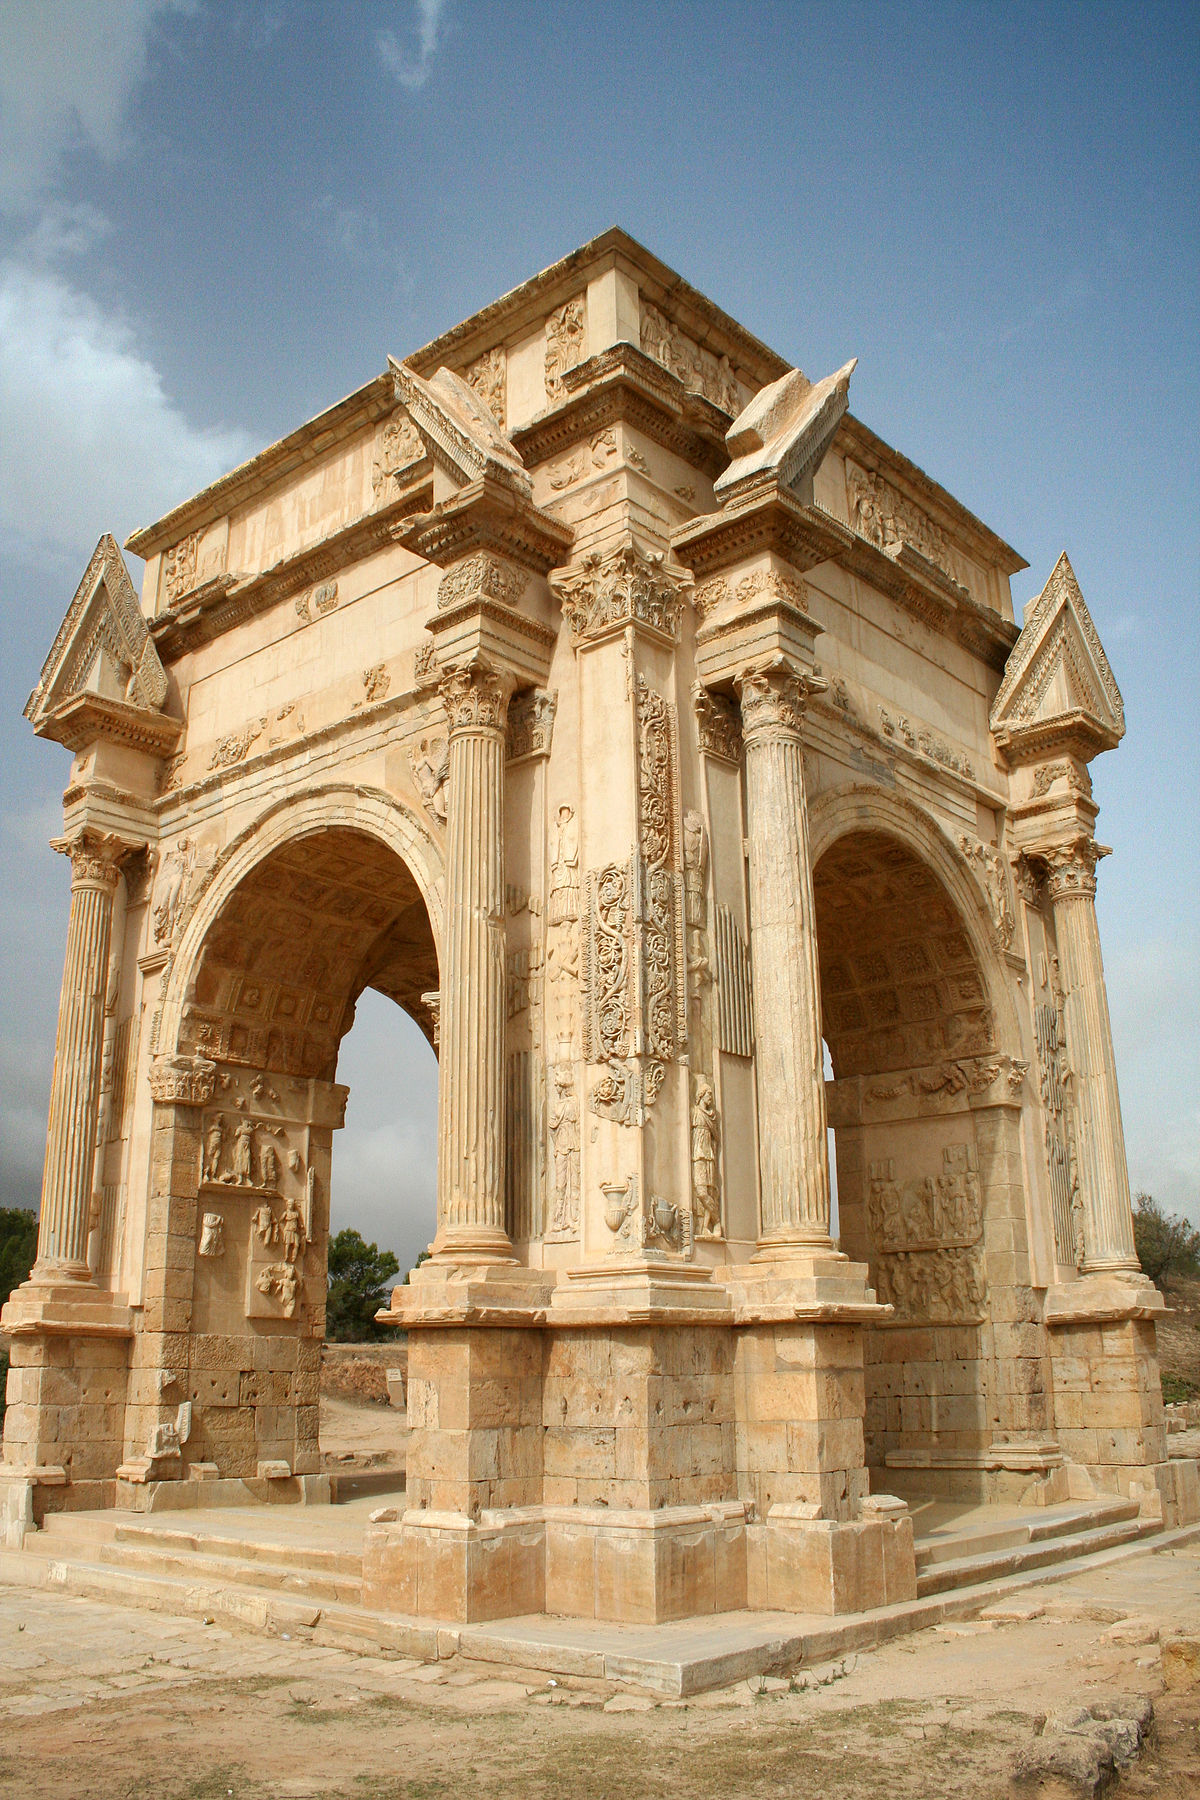 Arch of Septimius Severus, Leptis Magna. 3rd Century CE (Corinthian)